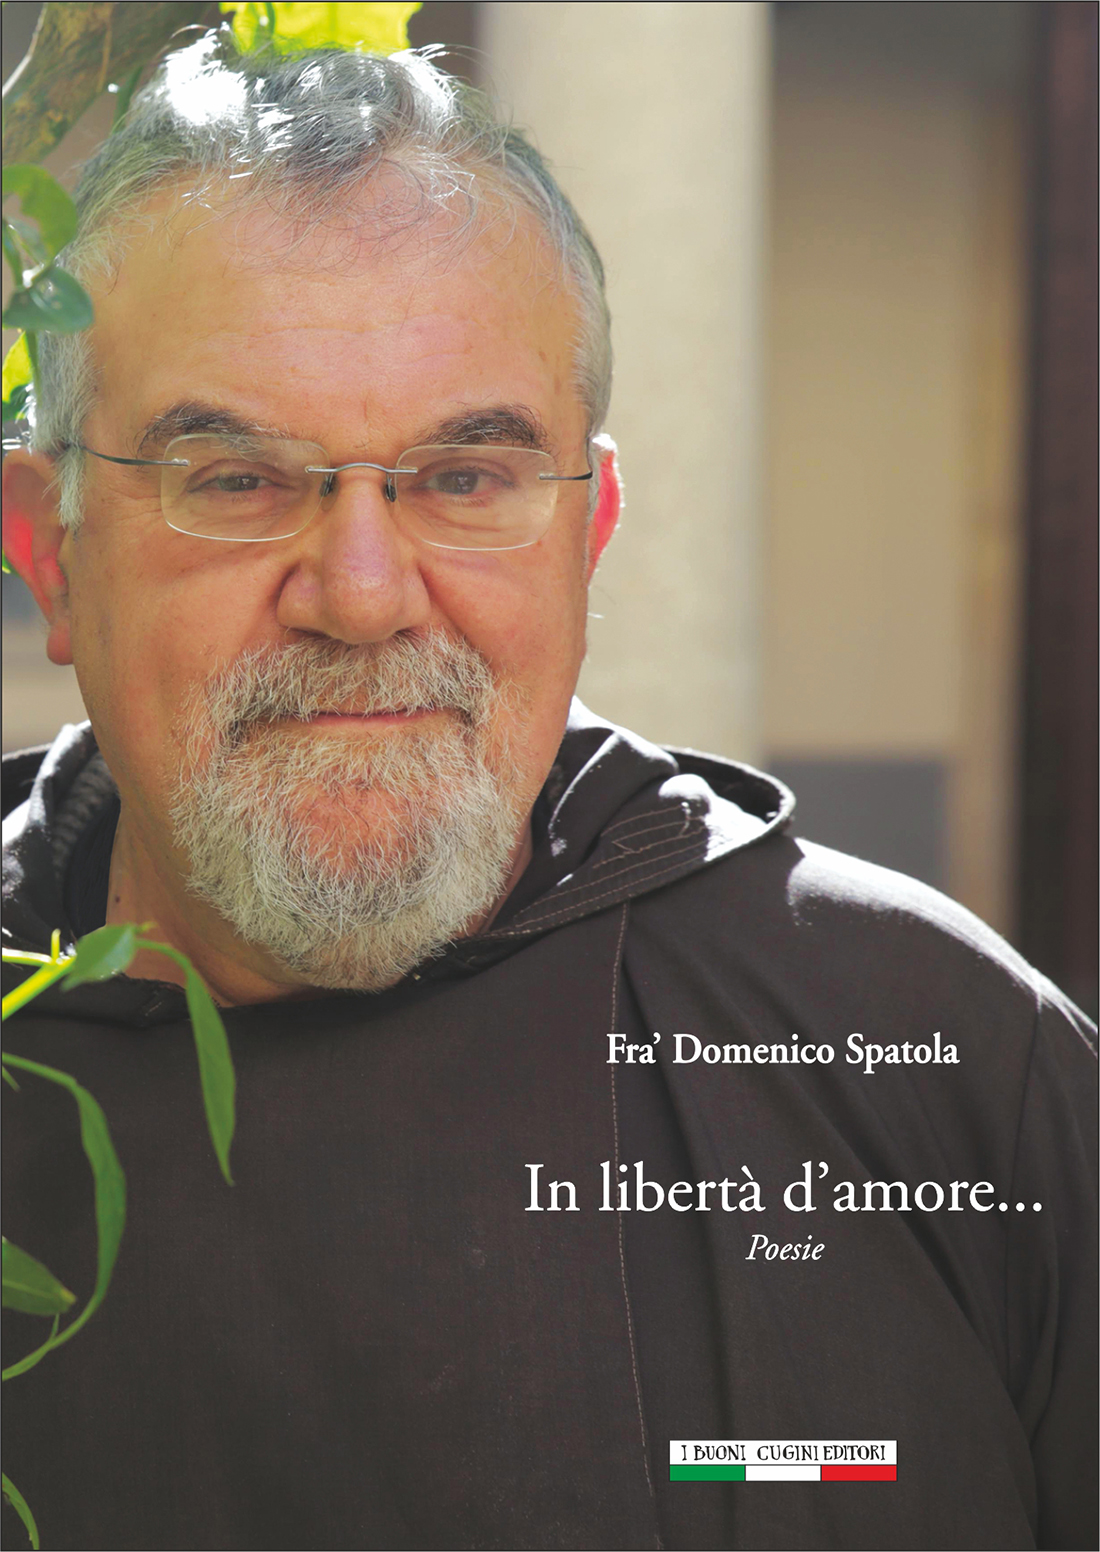 Fra' Domenico Spatola: In libertà d'amore.